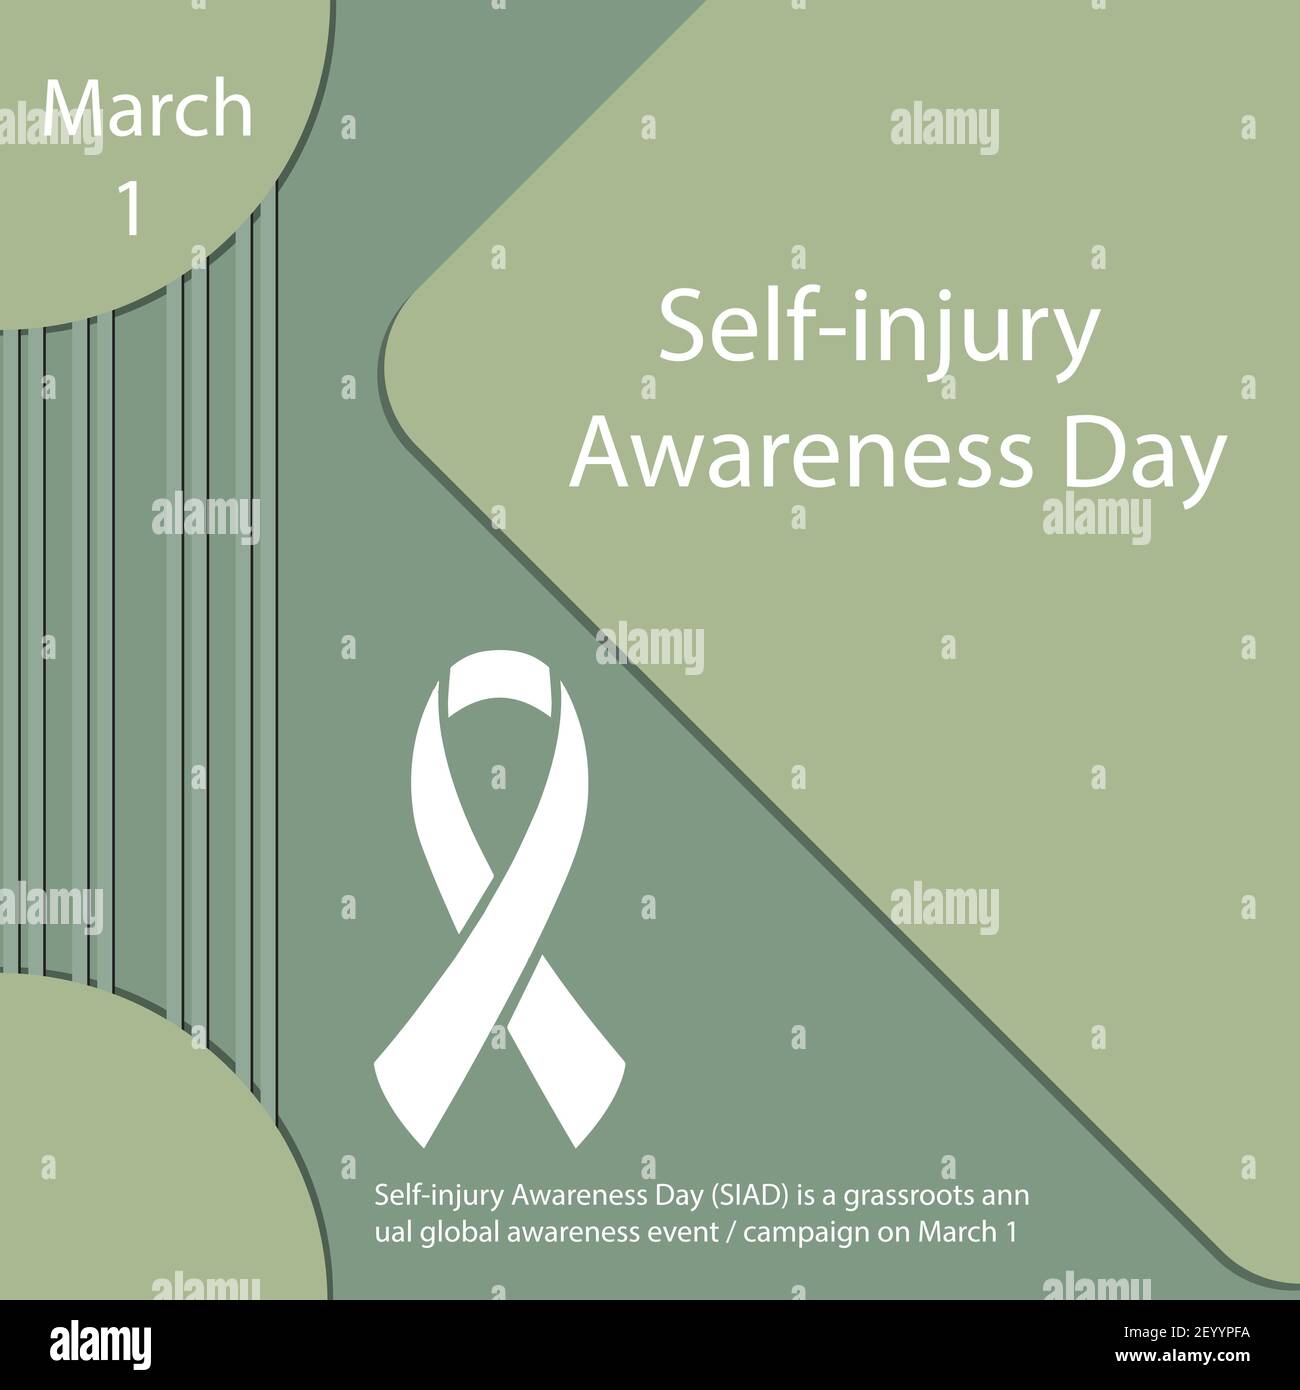 La Journée de sensibilisation aux blessures corporelles (SIAD) est une sensibilisation mondiale annuelle de la base Événement / campagne le 1er mars Illustration de Vecteur